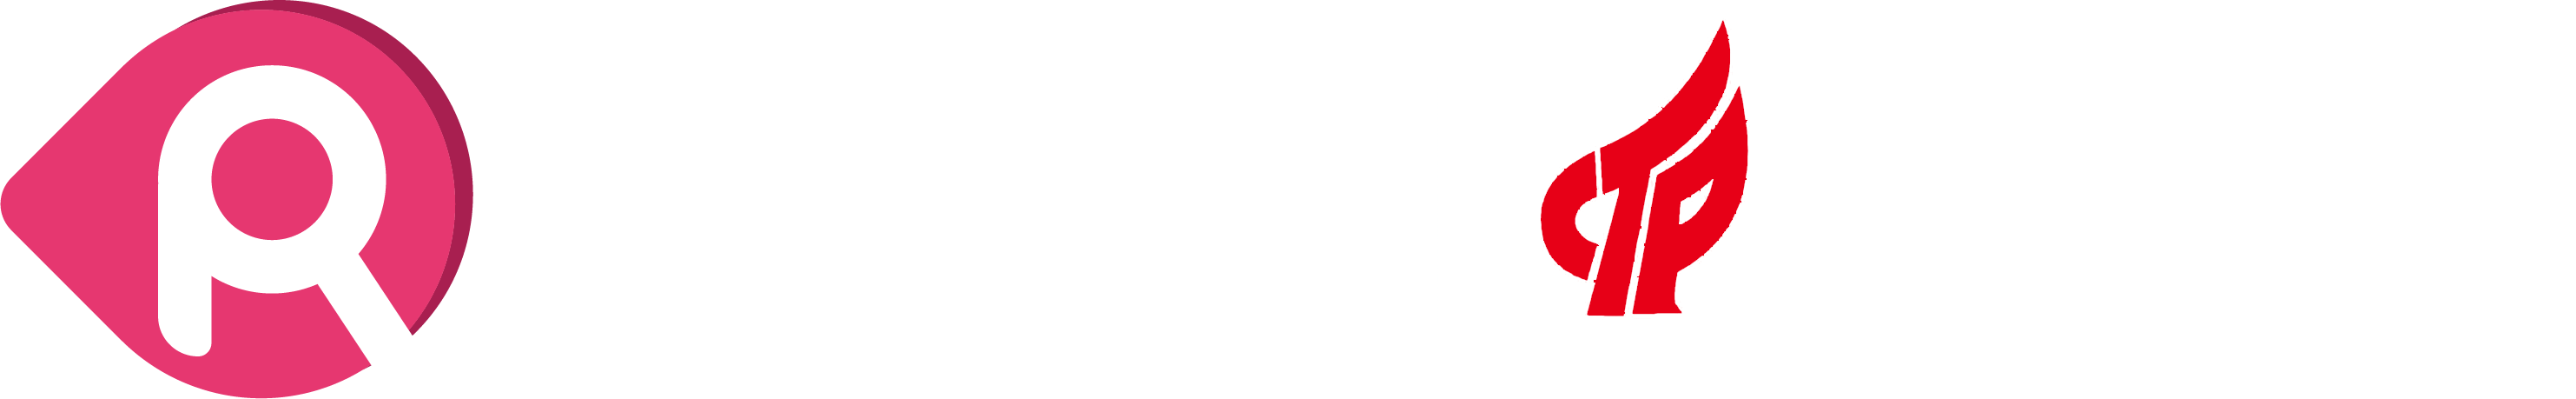 上海令容网络科技有限公司